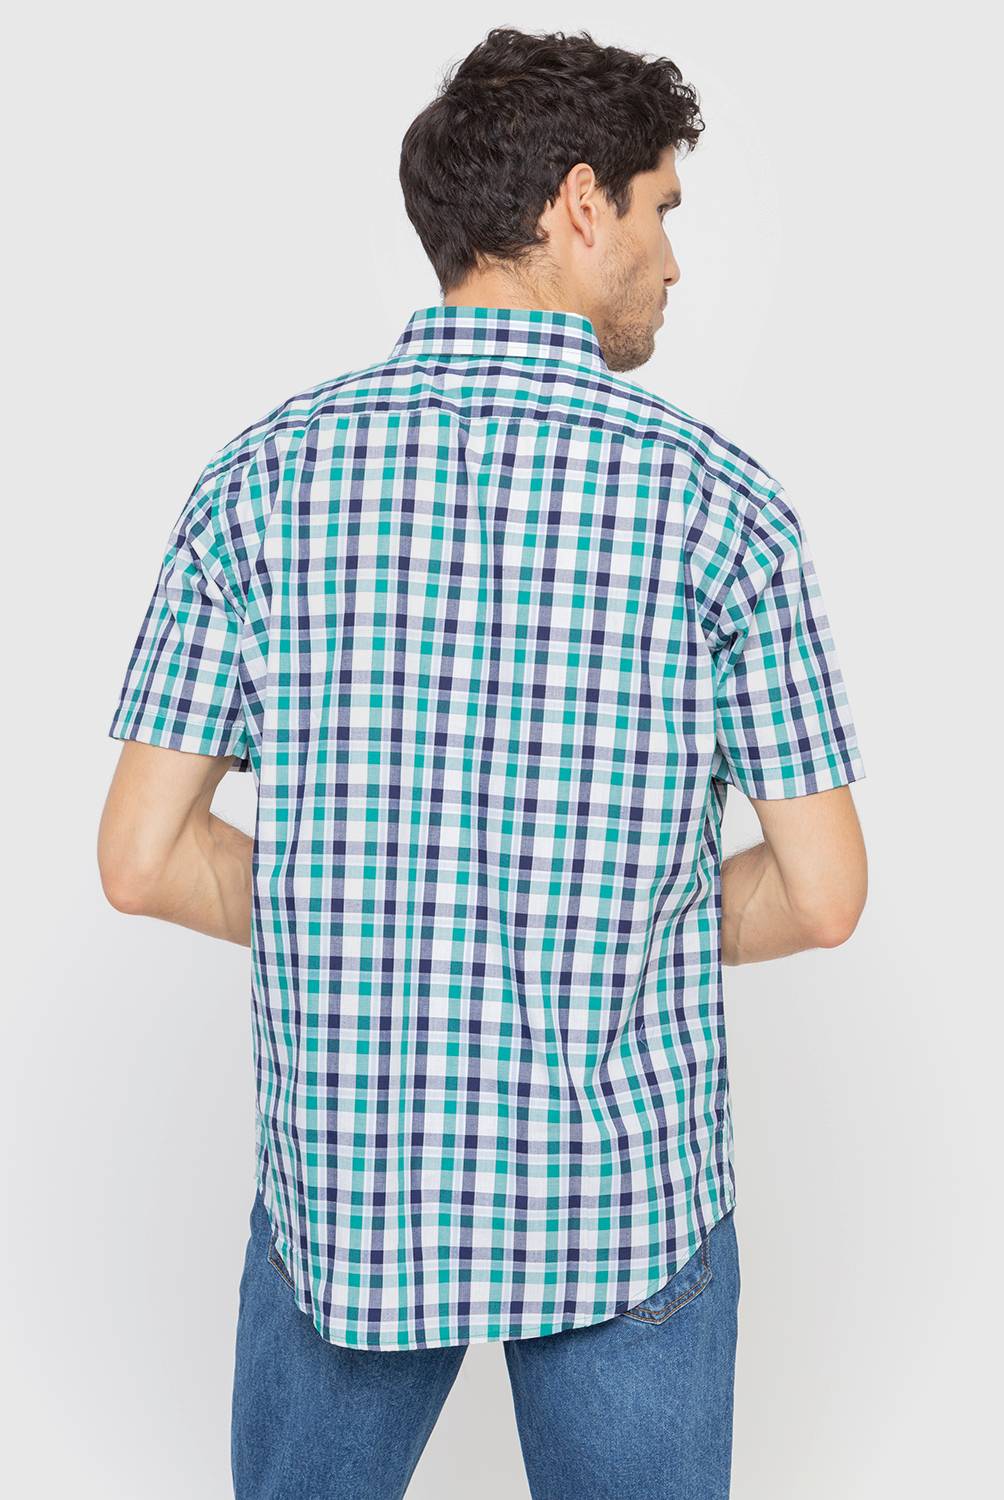 Newport - Camisa Manga Corta Hombre